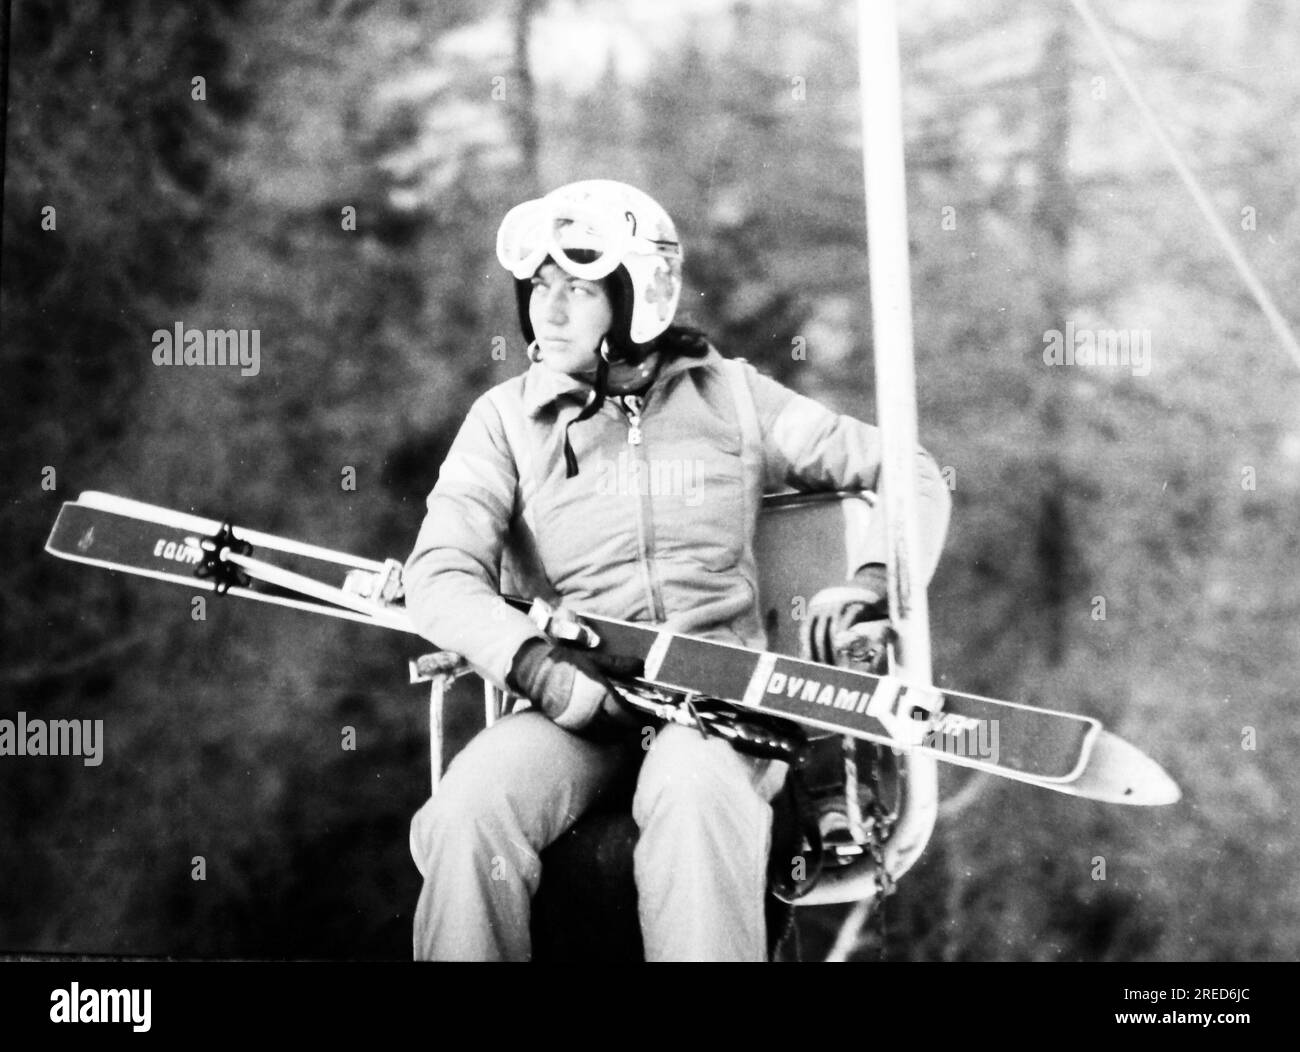 Rosi Mittermaier dans le télésiège avec son équipement de ski à Bad Gastein. [traduction automatique] Banque D'Images